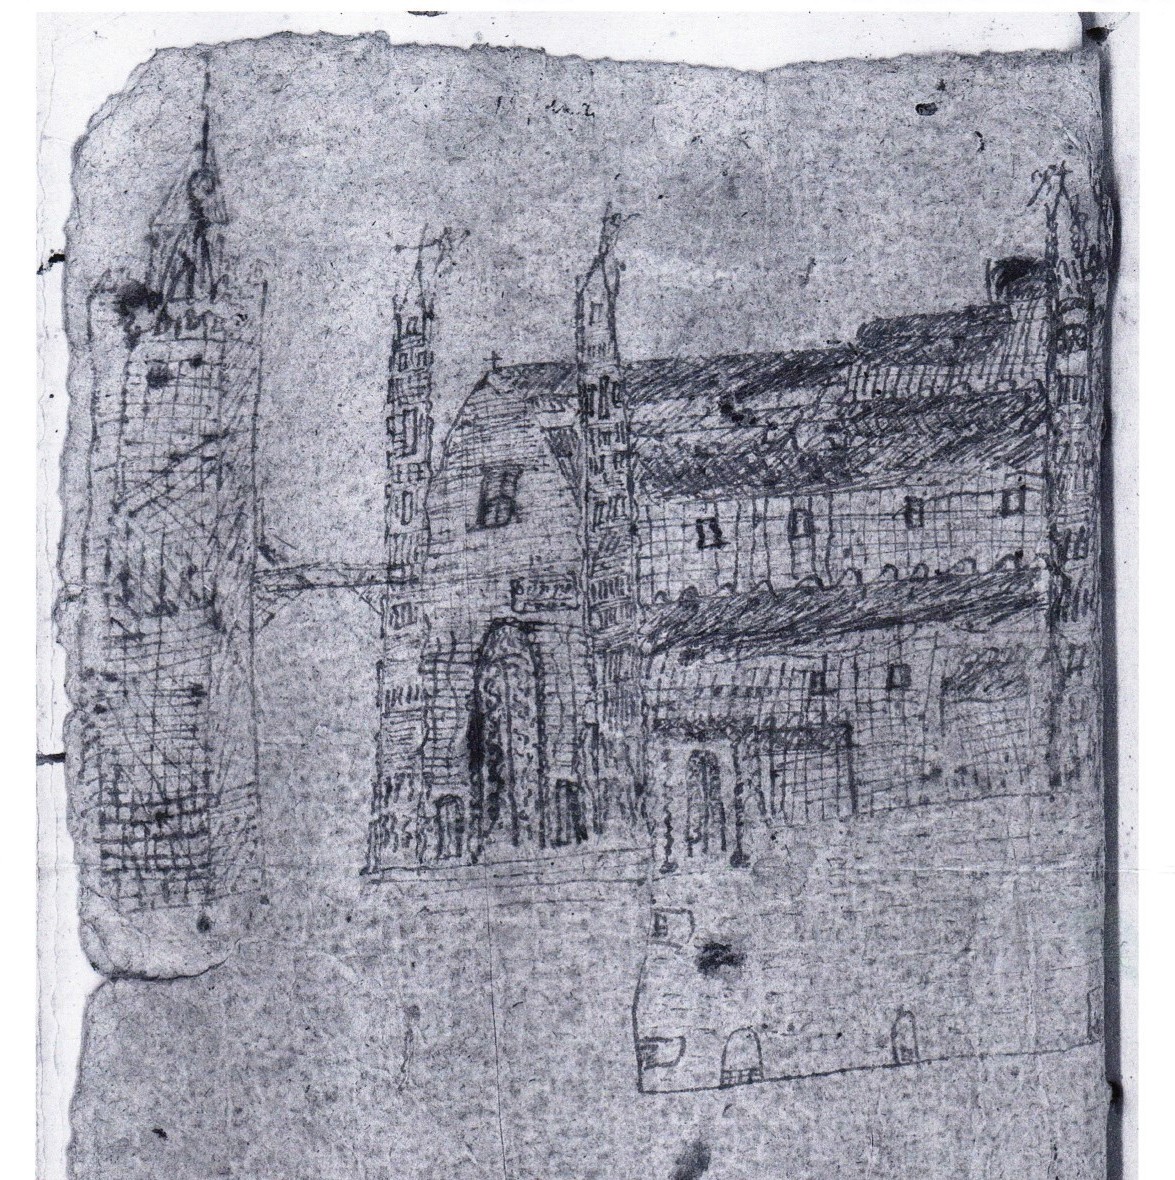 L'appalto per le pulizie della cattedrale di Palermo nel '500